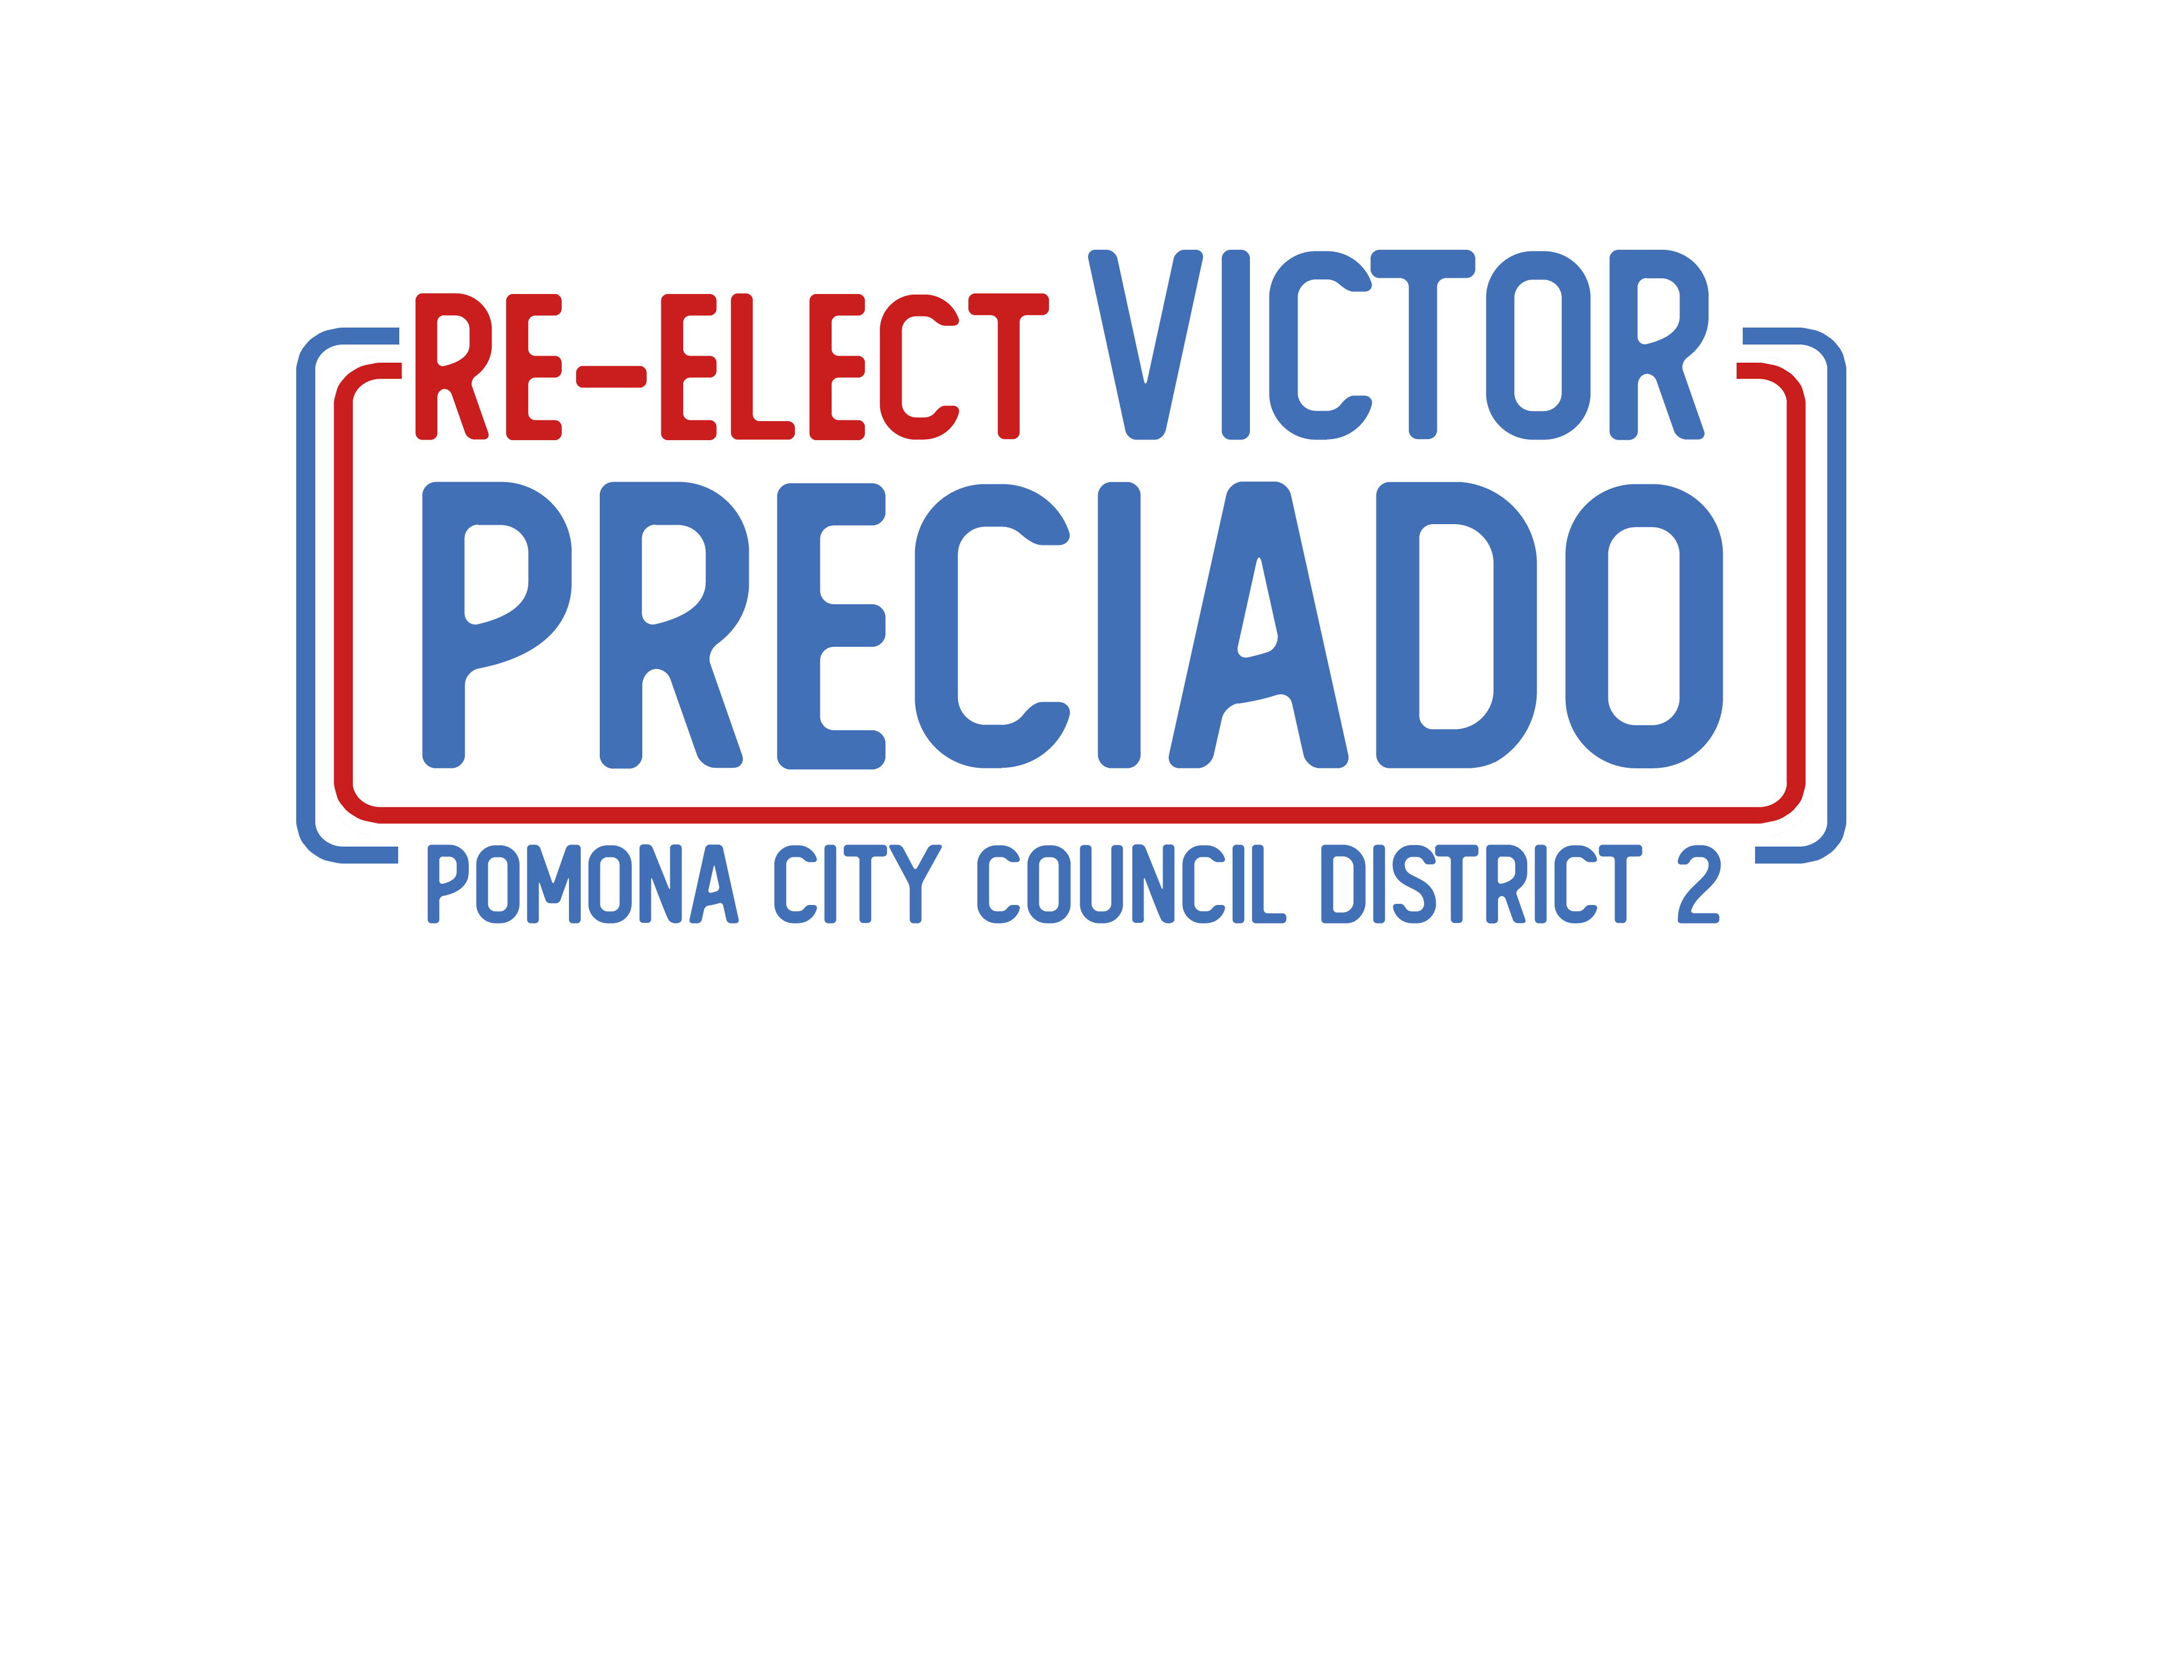 Victor Preciado for Pomona